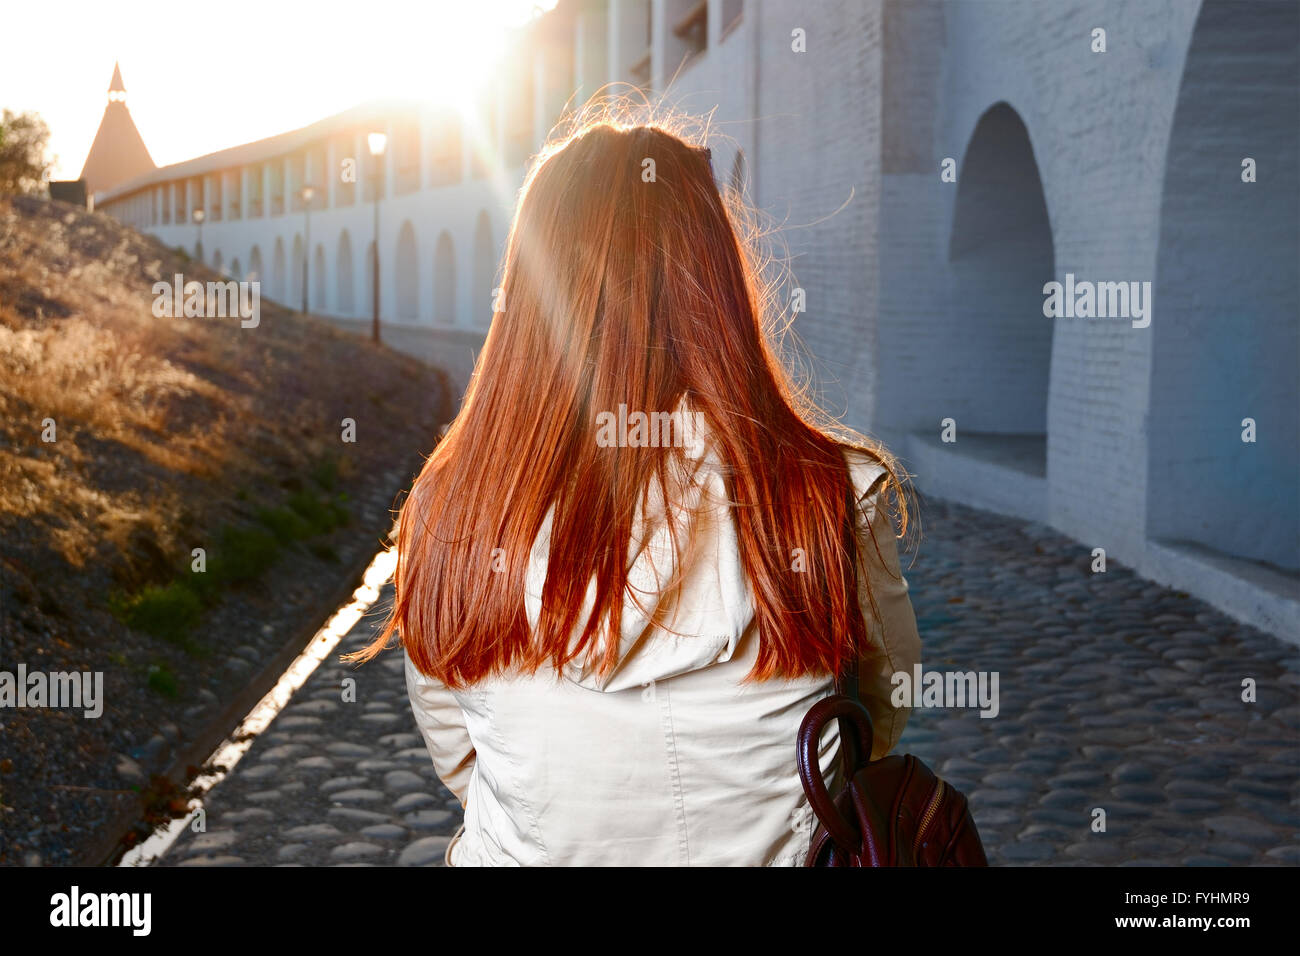 Vista trasera de la mujer de pelo rojo caminando por la calle cerca de la vieja fortaleza de Europa retroiluminados con sunflares Foto de stock